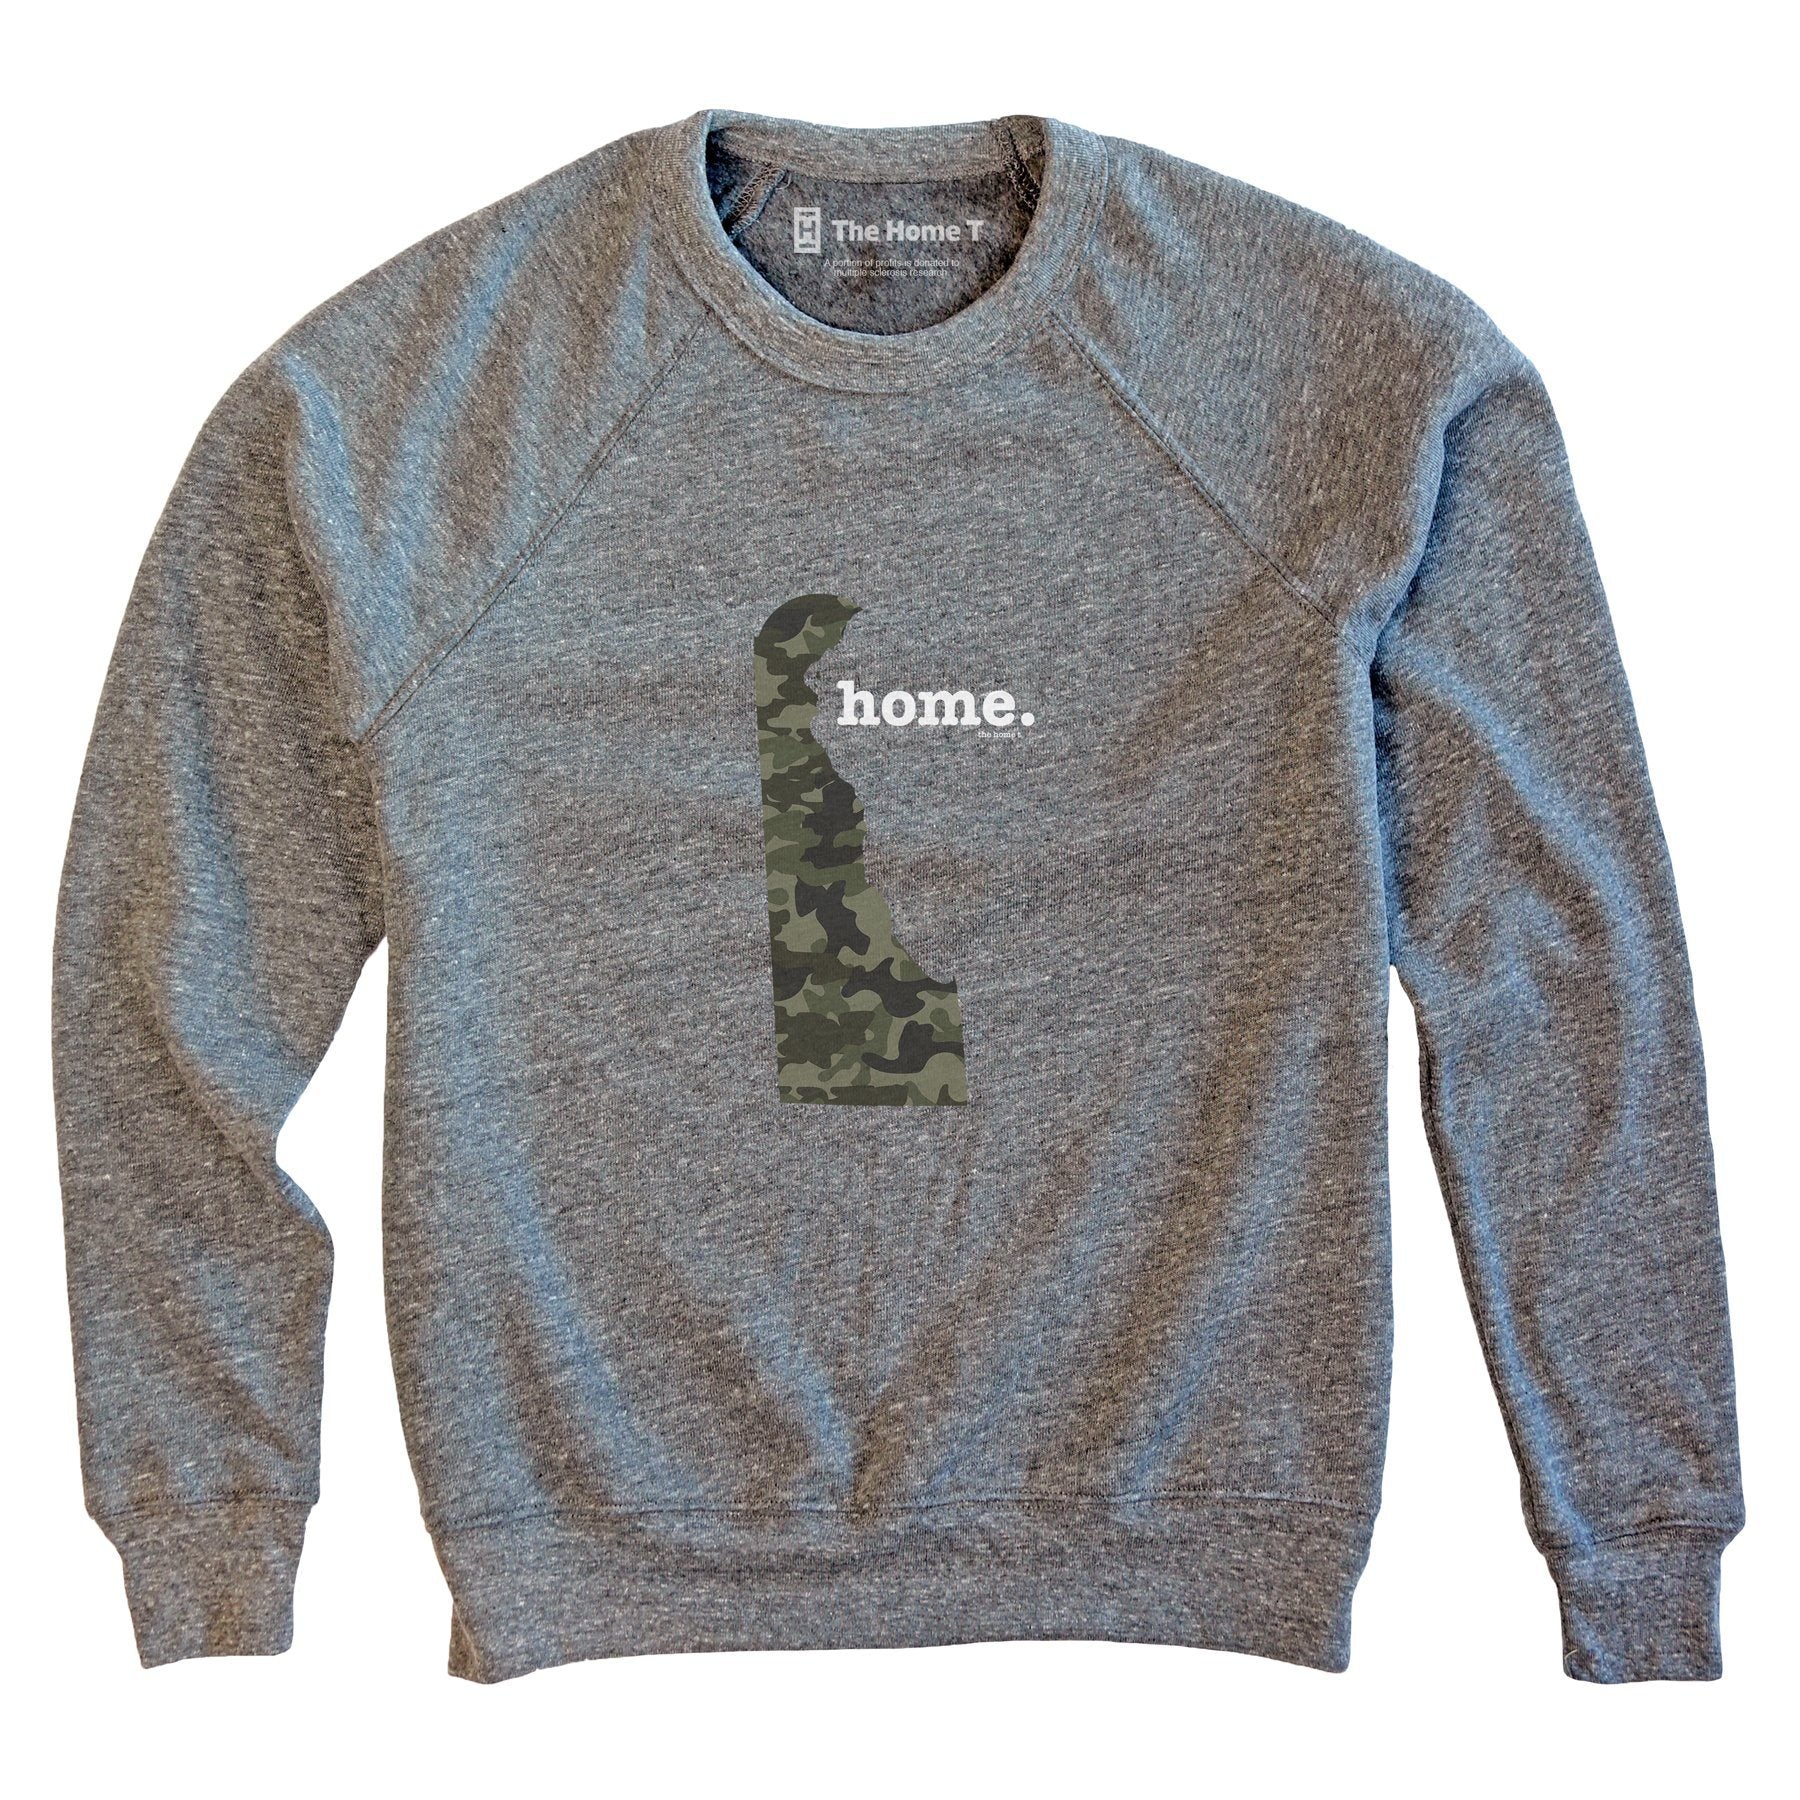 Delaware Camo Limited Edition Sweatshirt